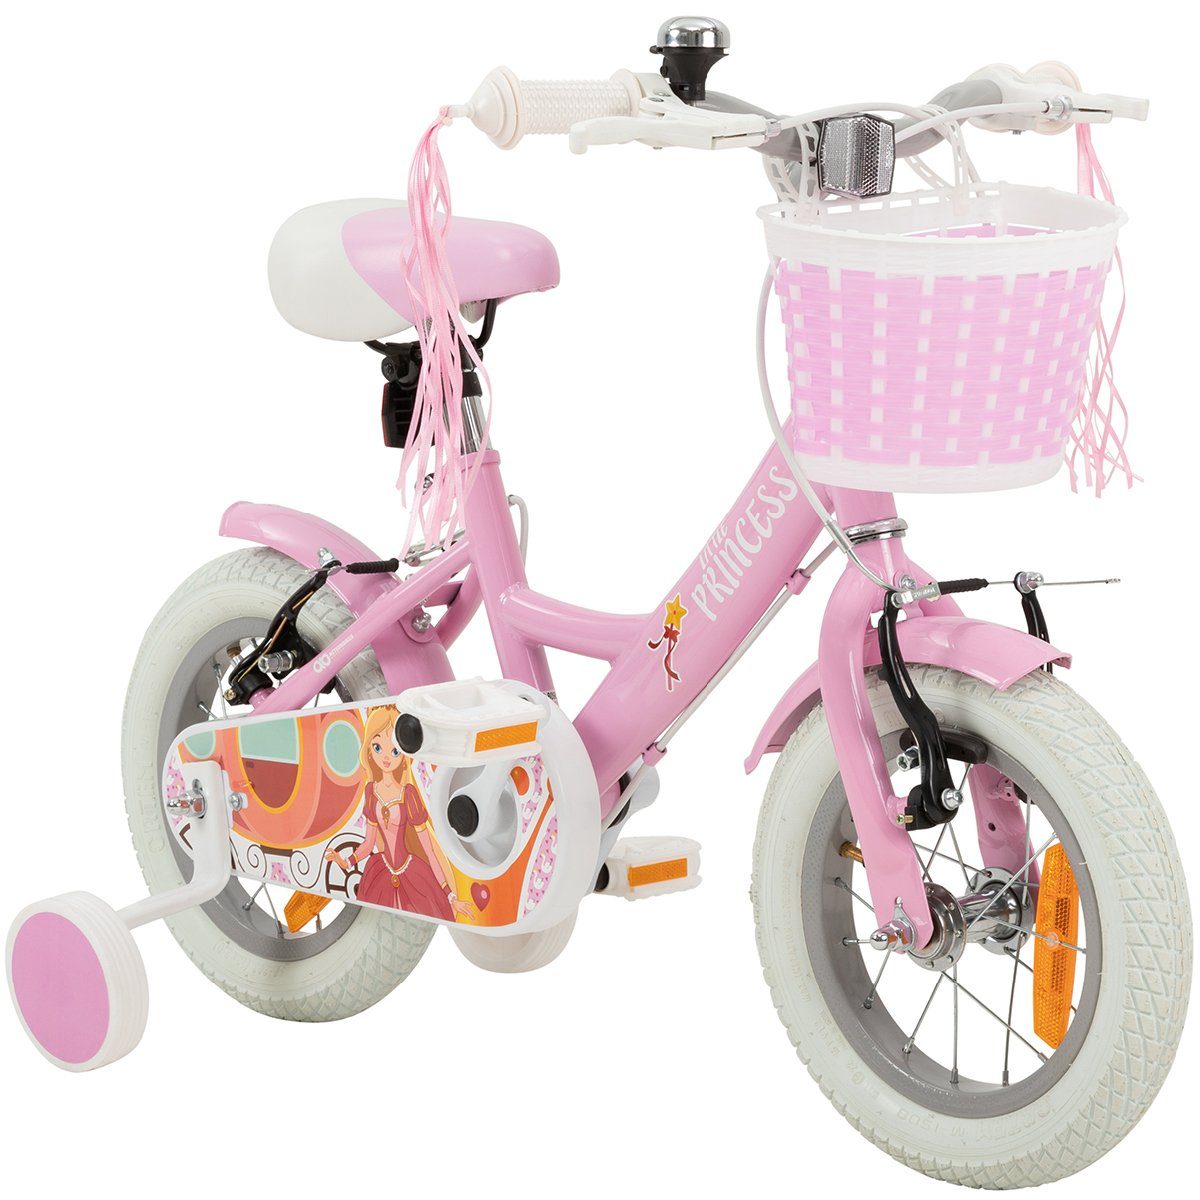 https://i.otto.de/i/otto/78f1f425-92f0-4dd8-b300-e86cd7dc01db/actionbikes-motors-kinderfahrrad-maedchen-kinder-fahrrad-princess-in-rosa-weiss-1-gang-ohne-schaltung-hoehenverstellbares-bike-maedchen-kinderrad-prinzessin-design-v-brake-bremse-vorne-hinten-wave-rahmen-gefederter-sattel-1-tlg-rutschfeste-handgriffe-schutzbleche-reflektoren-korb-pink-kinderrad-12-zoll-maedchenfahrrad-2-5-jahre-stuetzraeder.jpg?$formatz$